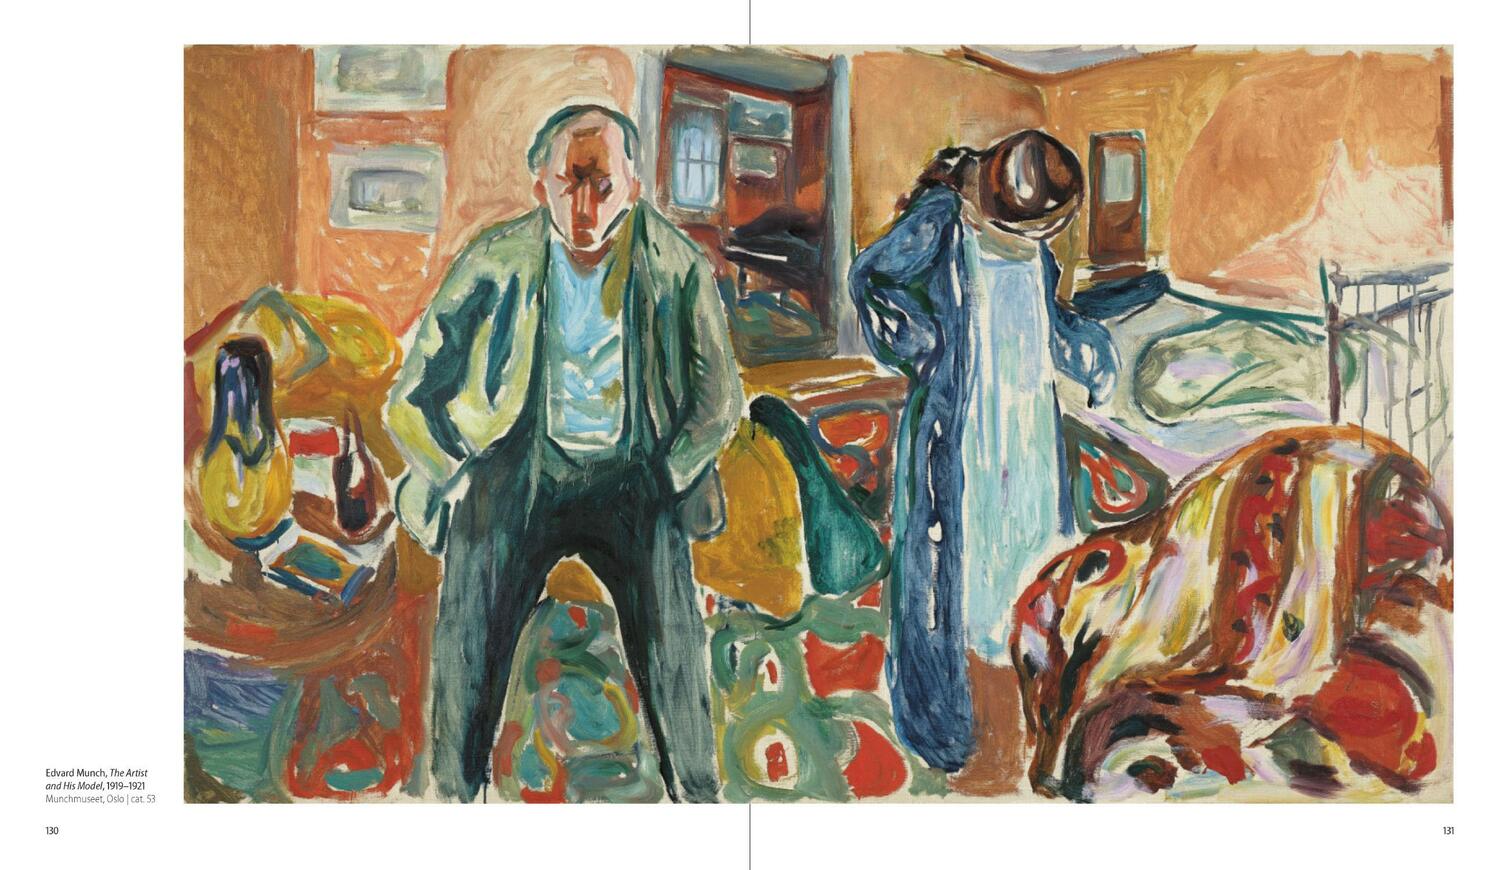 Bild: 9783791378183 | Edvard Munch | In Dialogue | Dieter Buchhart (u. a.) | Buch | 280 S.